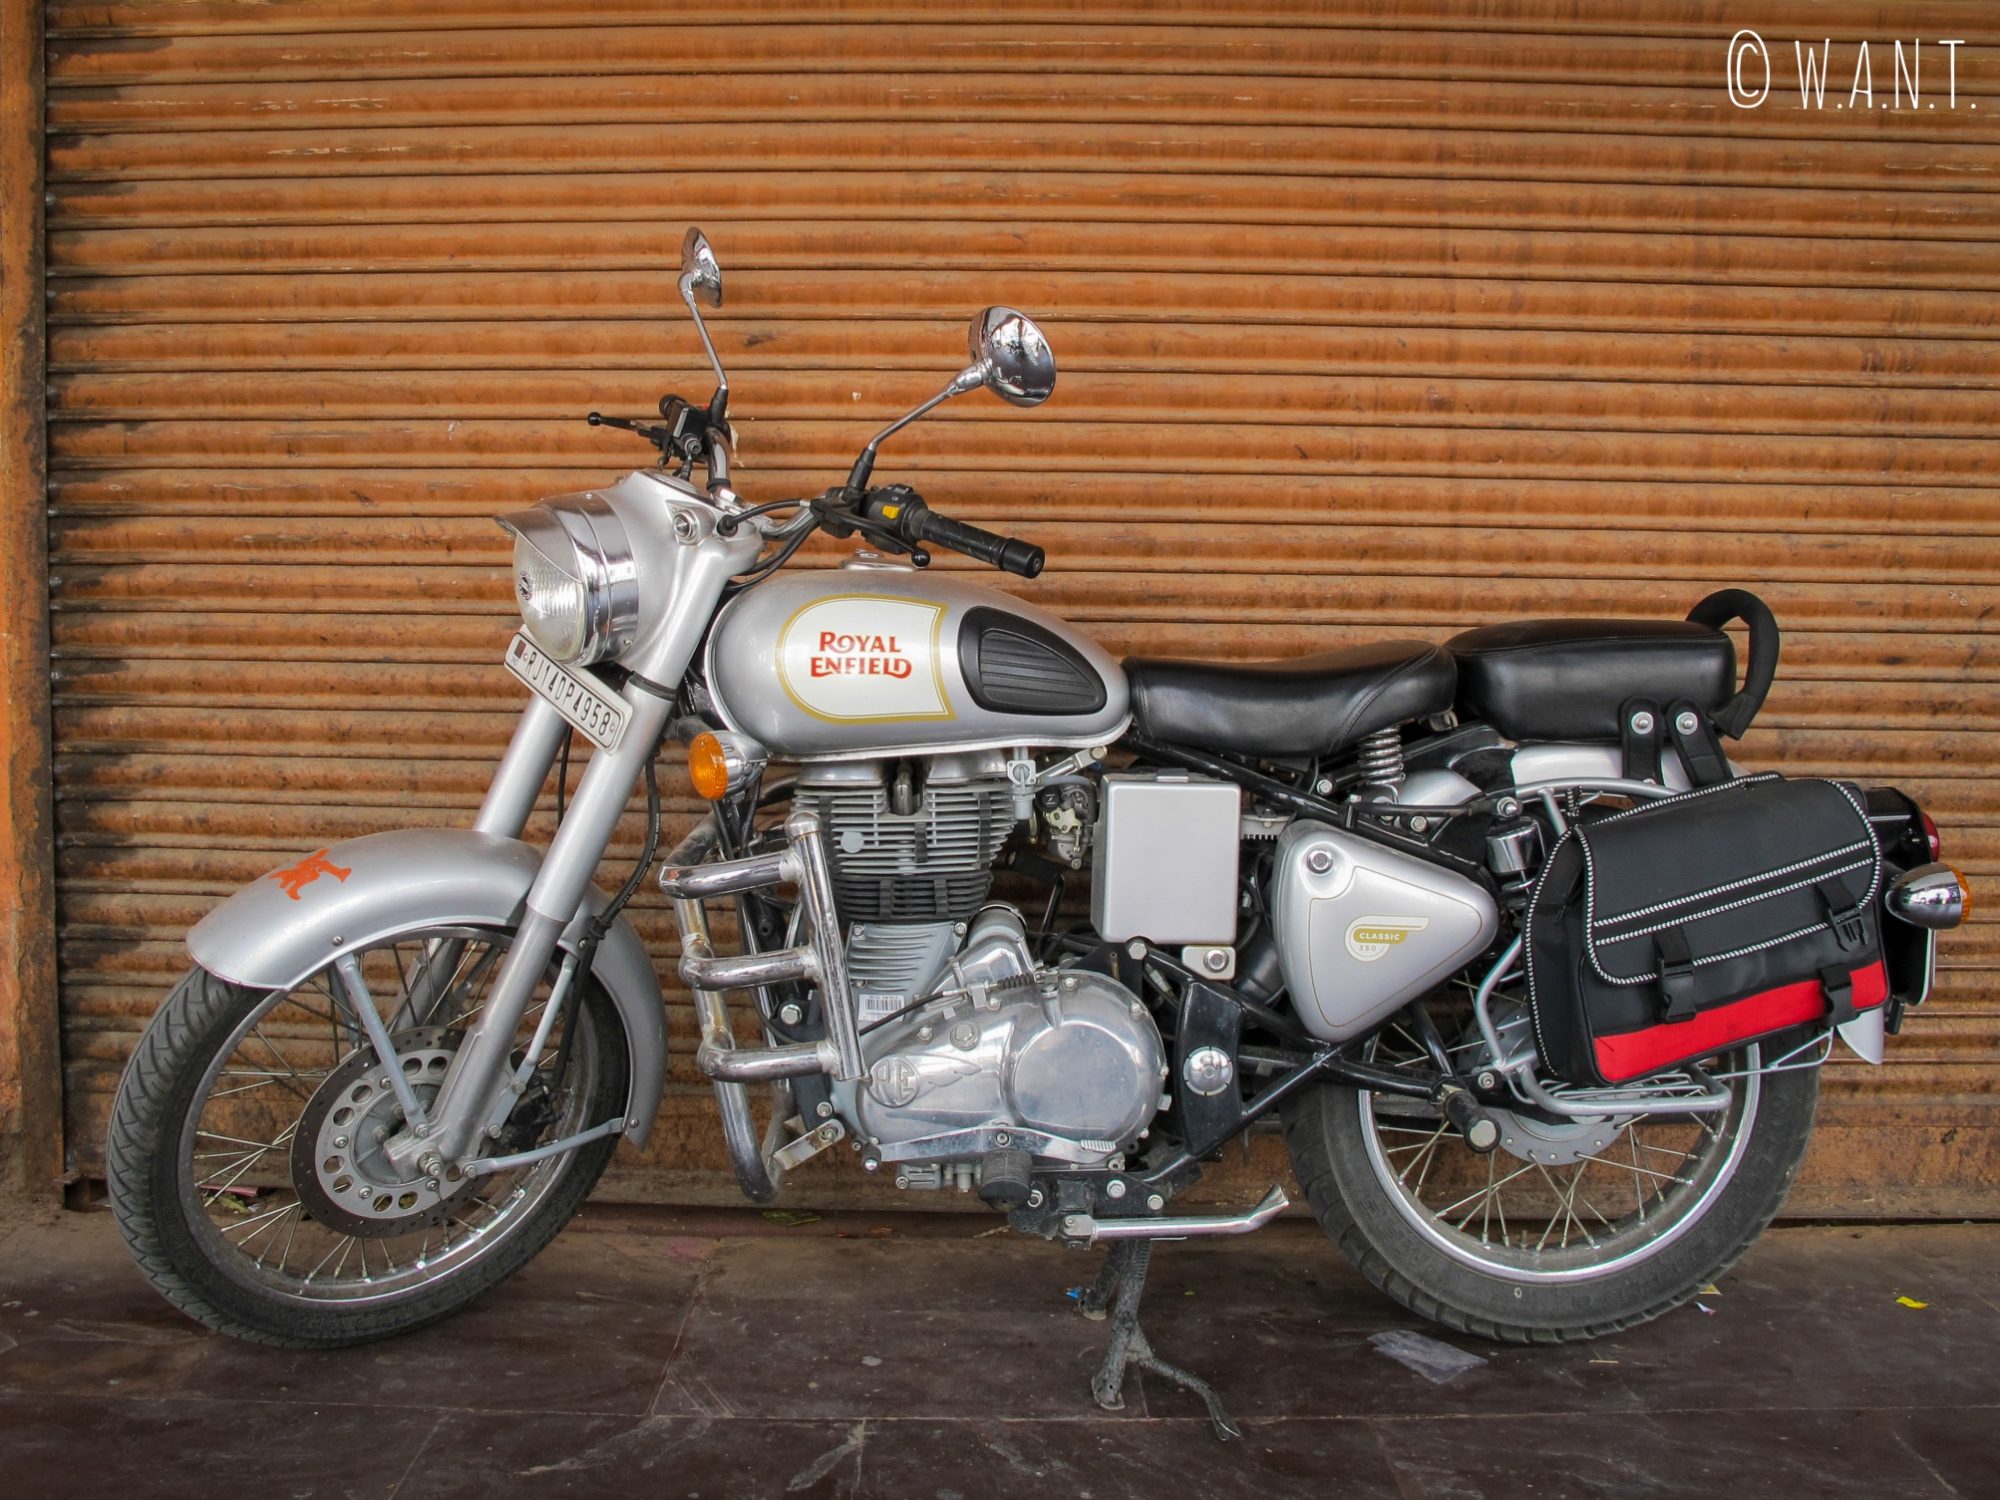 Royal Enfield, la marque de moto souveraine en Inde